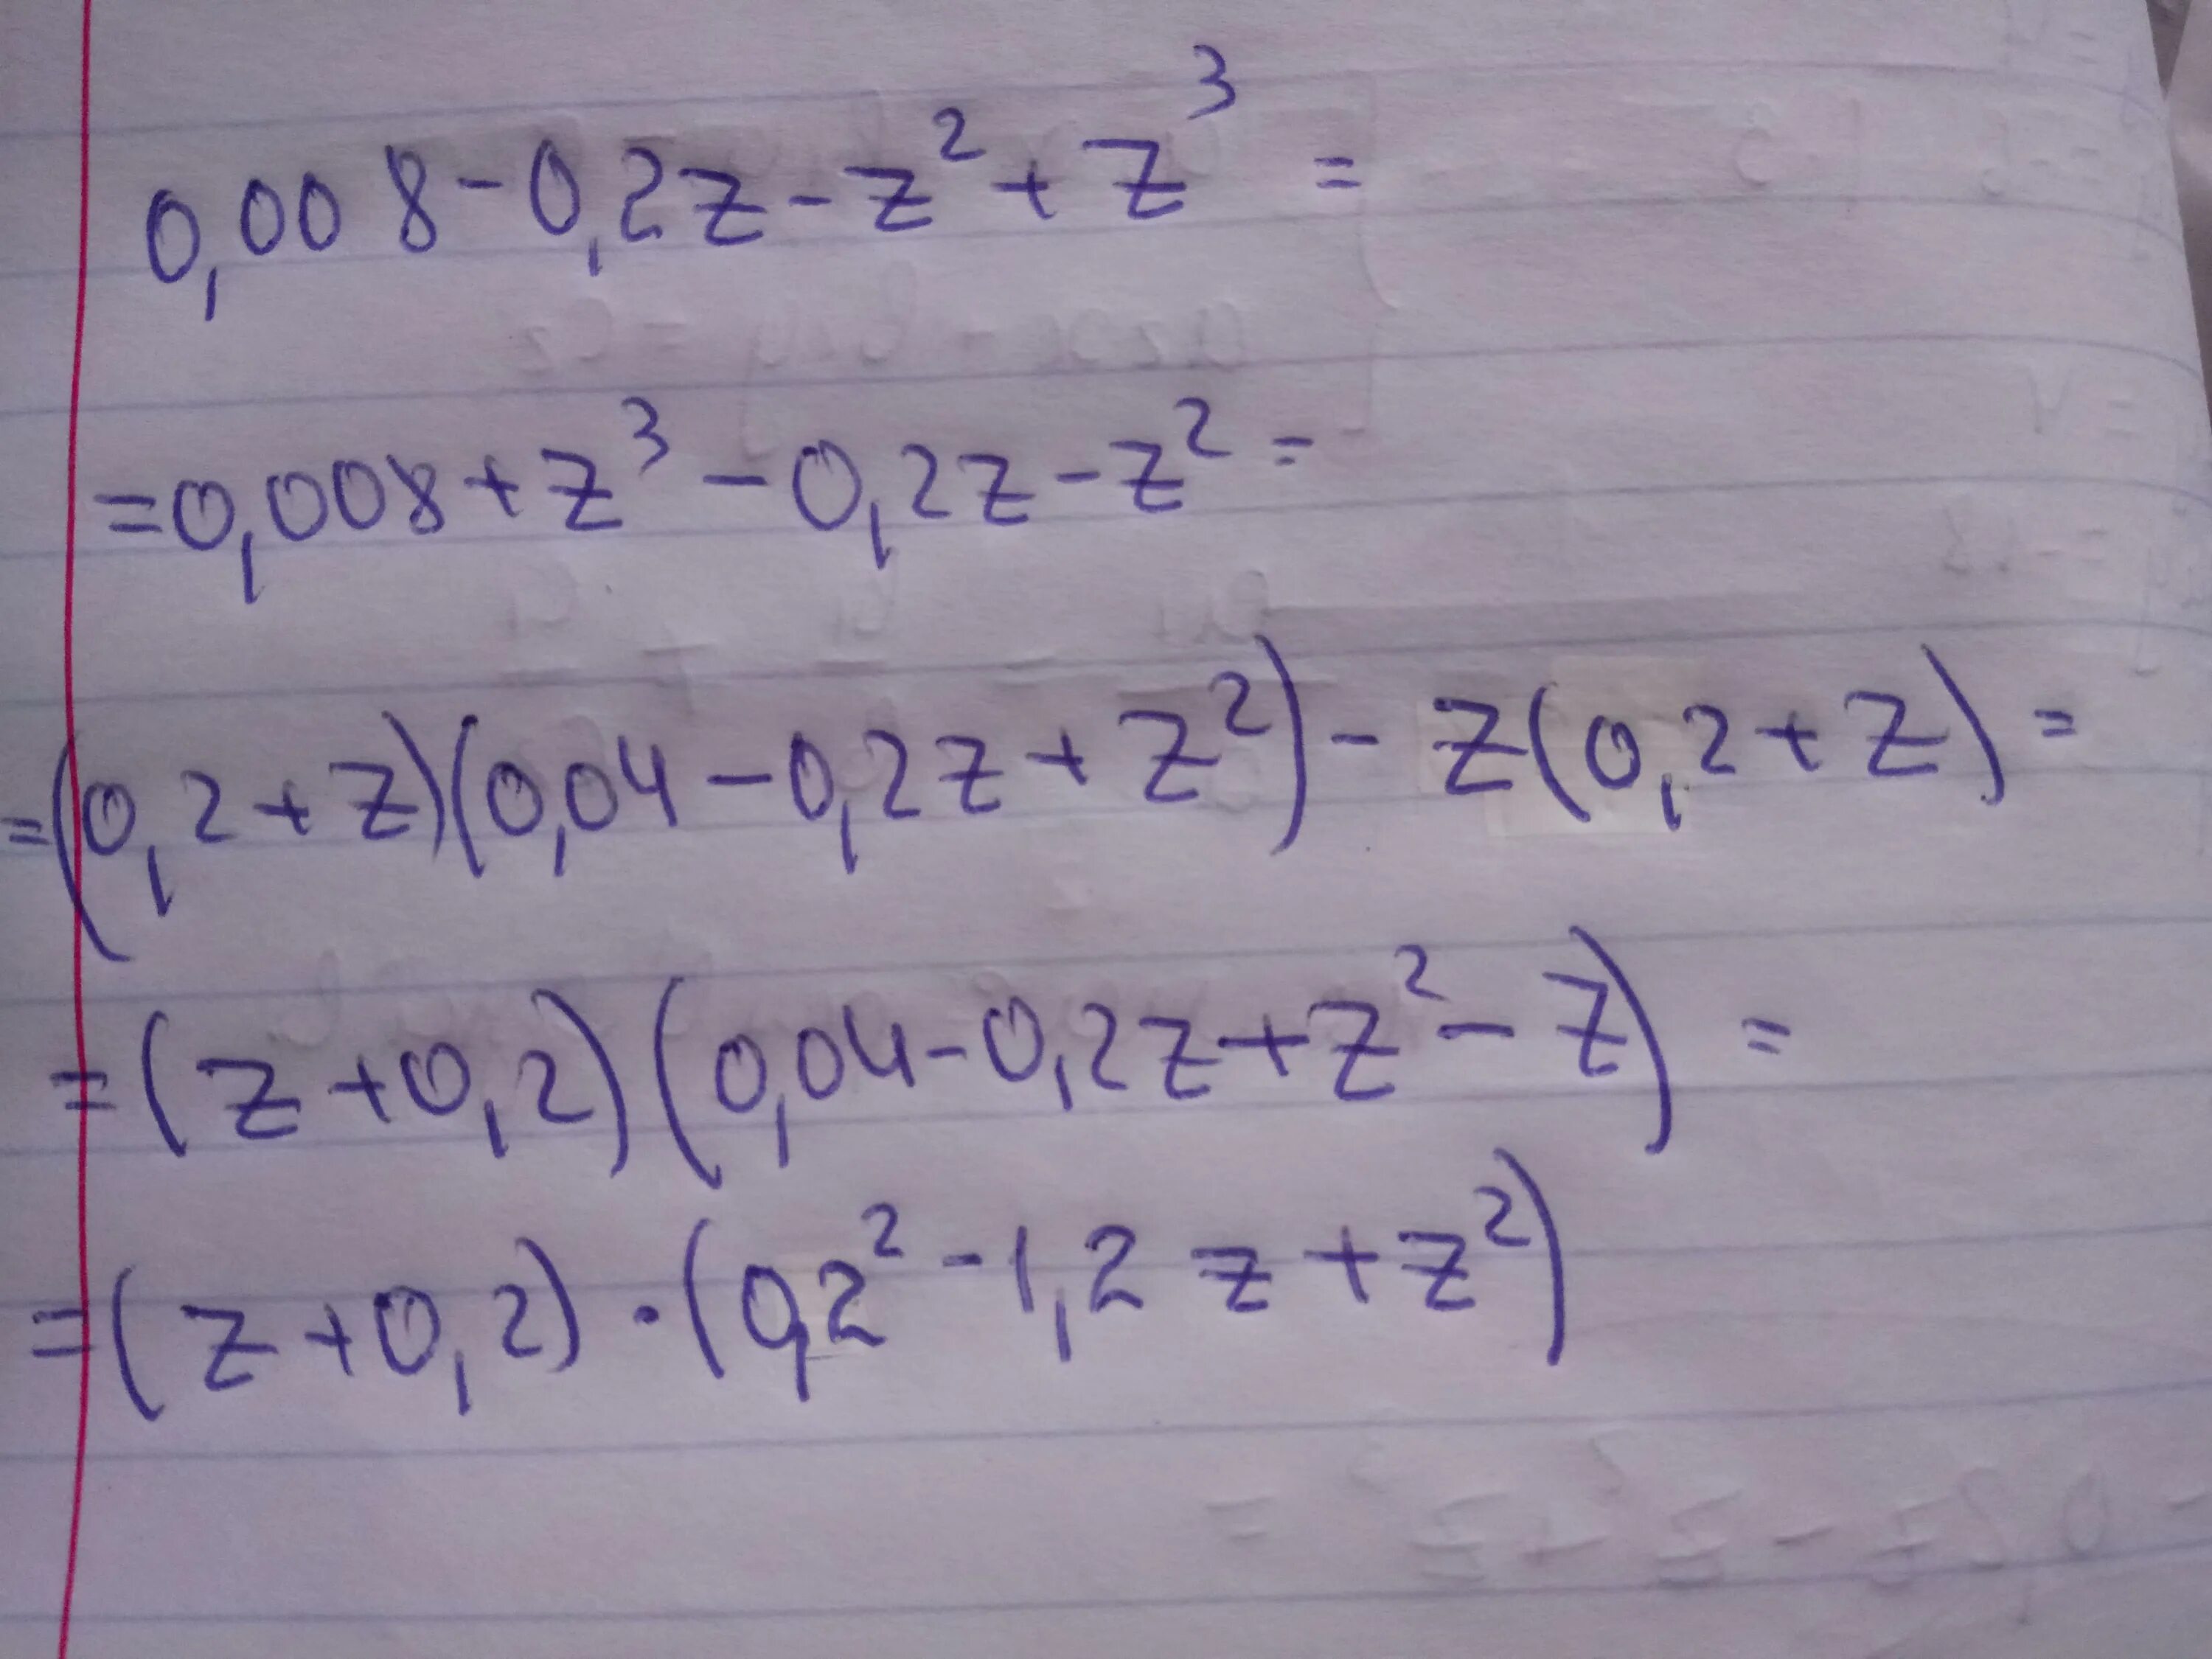 3z 3 2 z 1. Разложить на множители 0.001-0.1z-z2+z3. Разложи на множители 5z^2 - 10zy + 5y^2. Разложи на множители 0,001−0,1z−z2+z3.. Разложи на множители 0 6 z2.